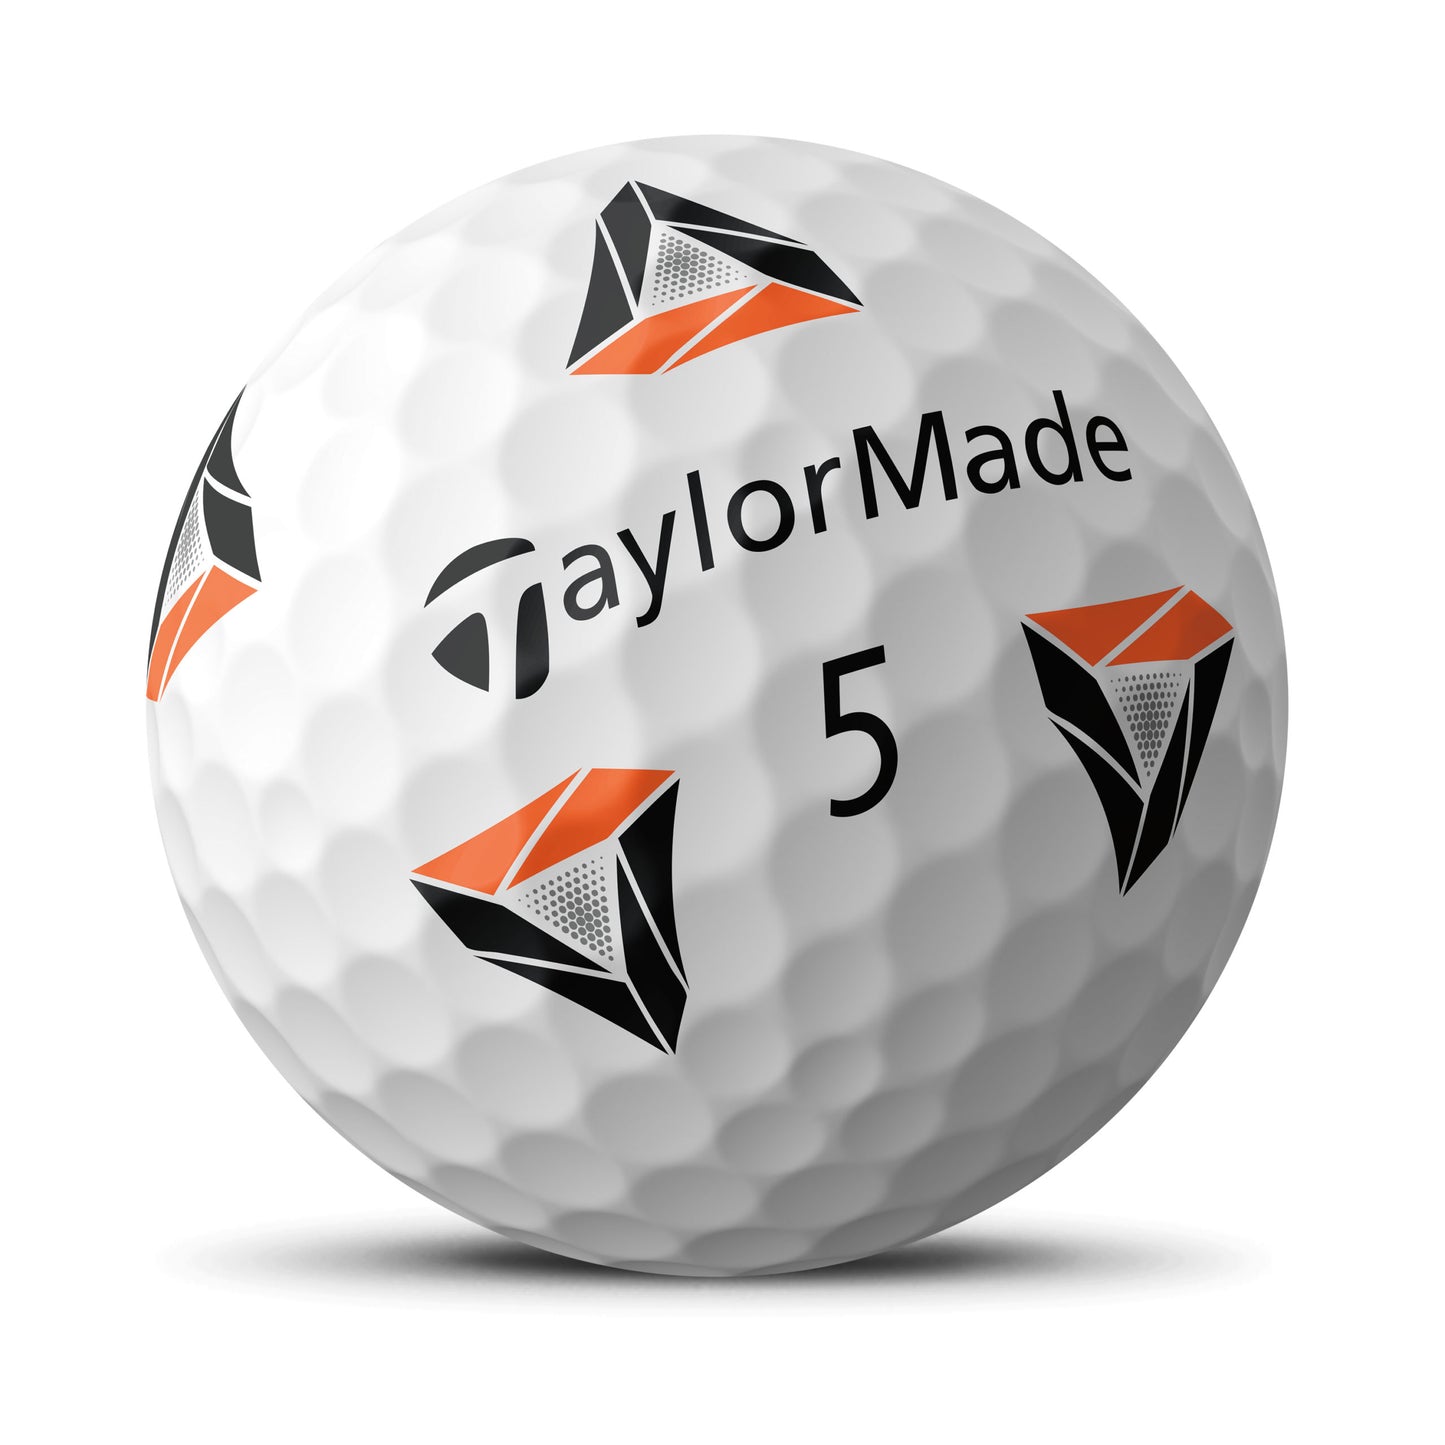 https://golfballs.net/cdn/shop/files/TaylorMadePix.jpg?v=1691270832&width=1445